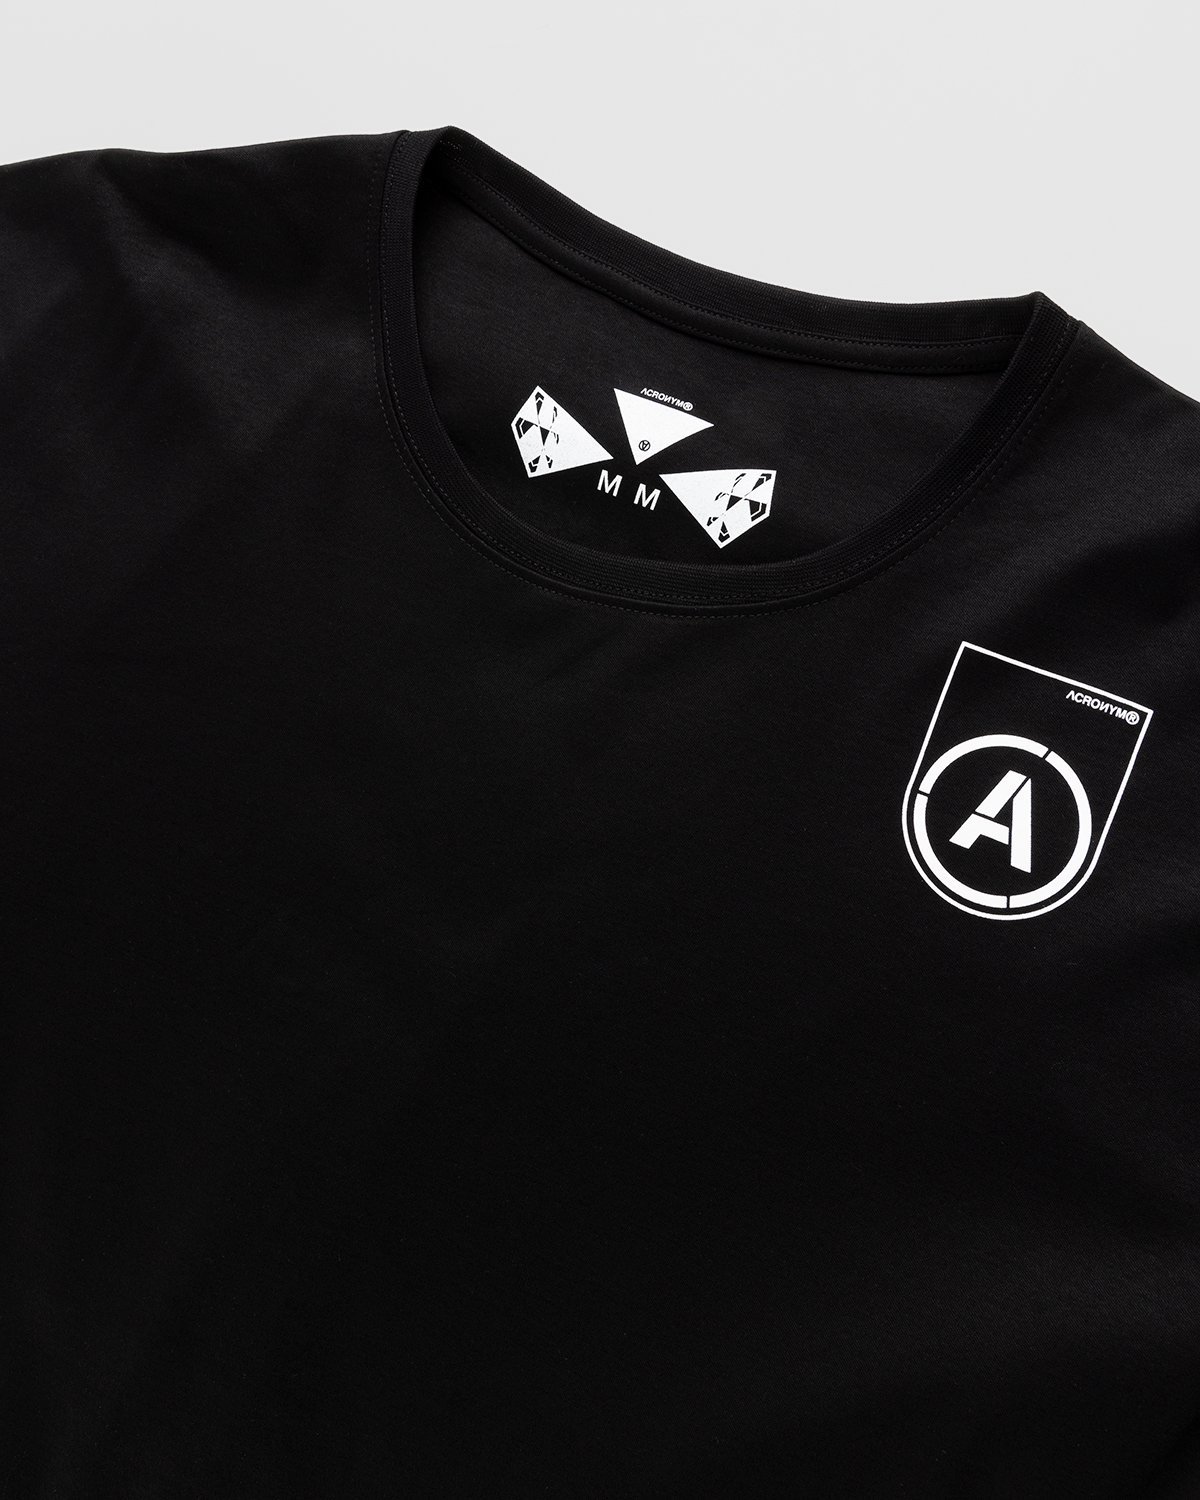 ACRONYM - S24-PR-B T-Shirt Black - Clothing - Black - Image 3